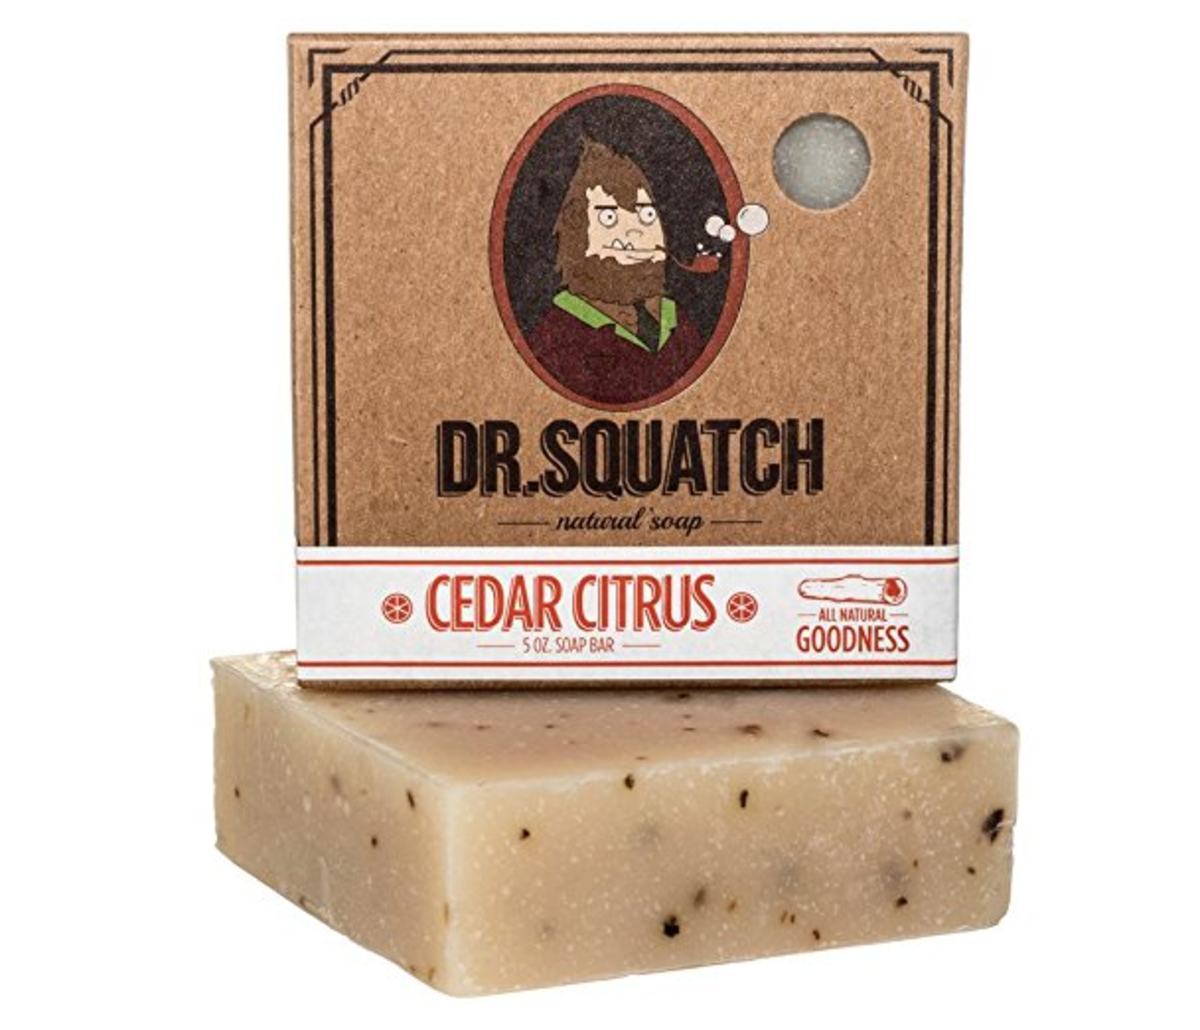 Squatch Bundle - Dr. Squatch  Bay rum, Mens soap, Specialty soap